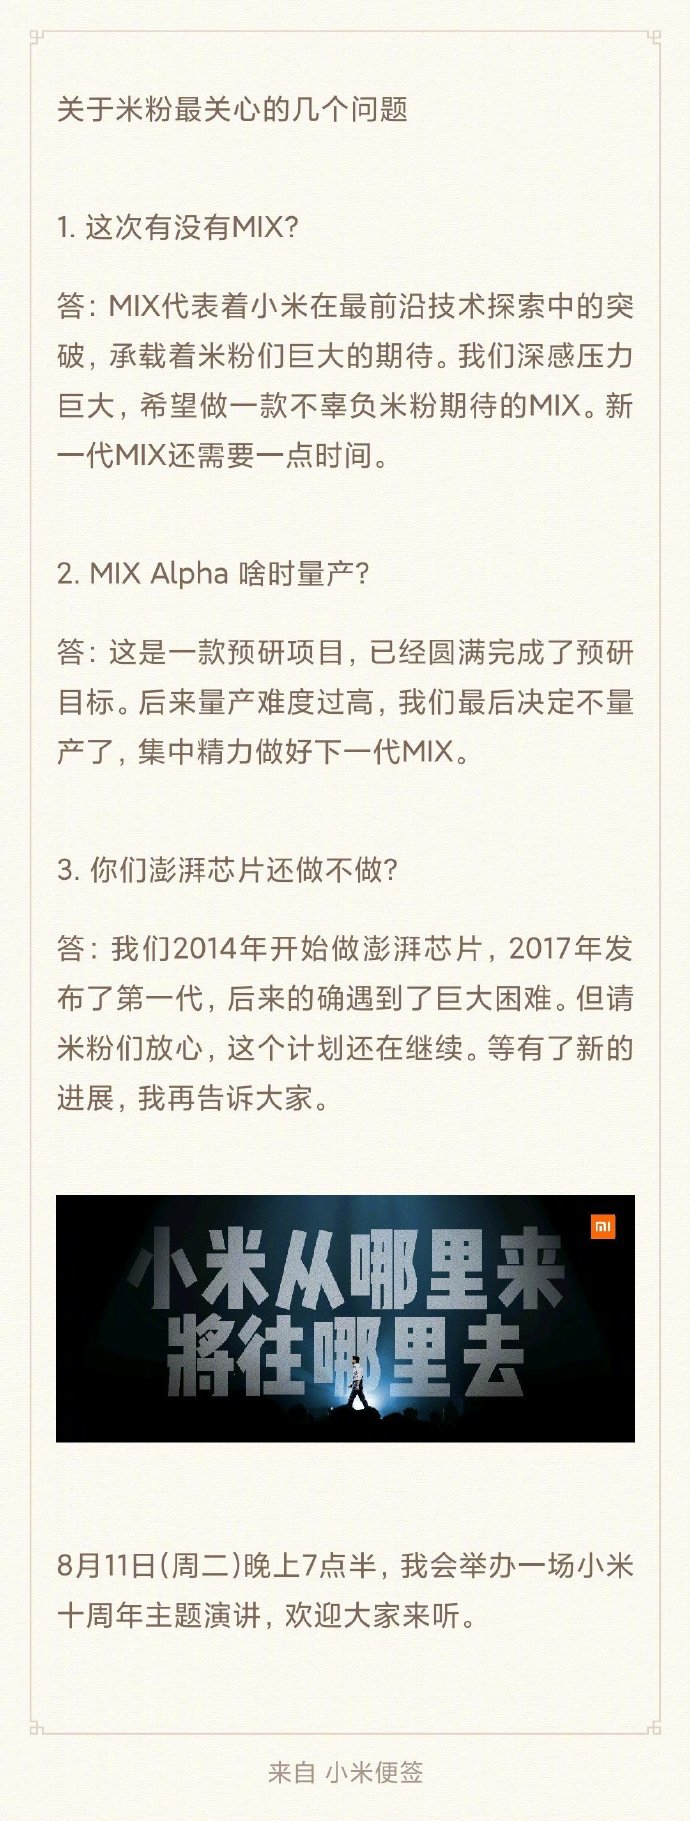 CEO Xiaomi Lei Jun:
Mi MIX Alpha sẽ không bao giờ được bán ra thị trường